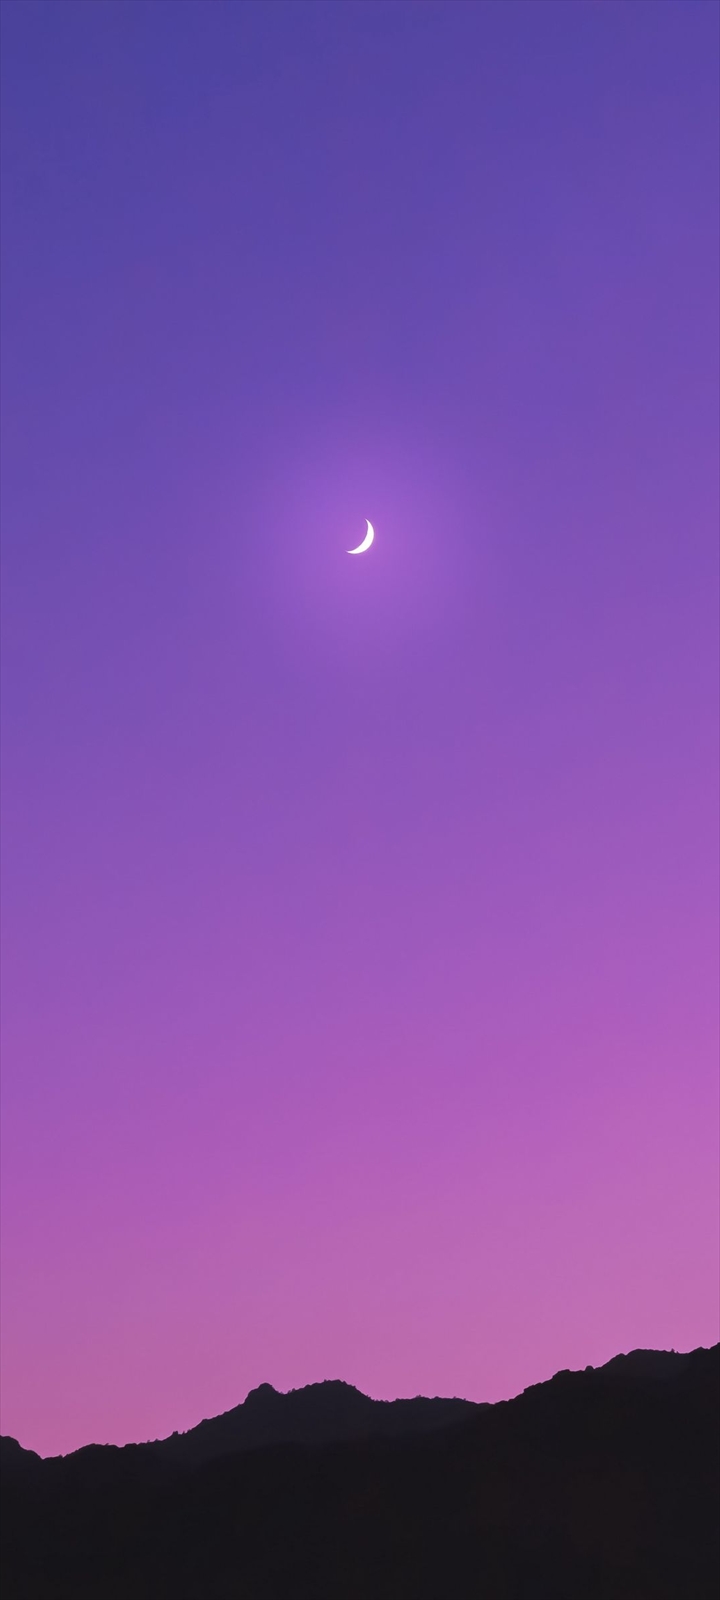 三日月 紫のグラデーションの空 黒い山 Moto G9 Play Androidスマホ壁紙 待ち受け スマラン